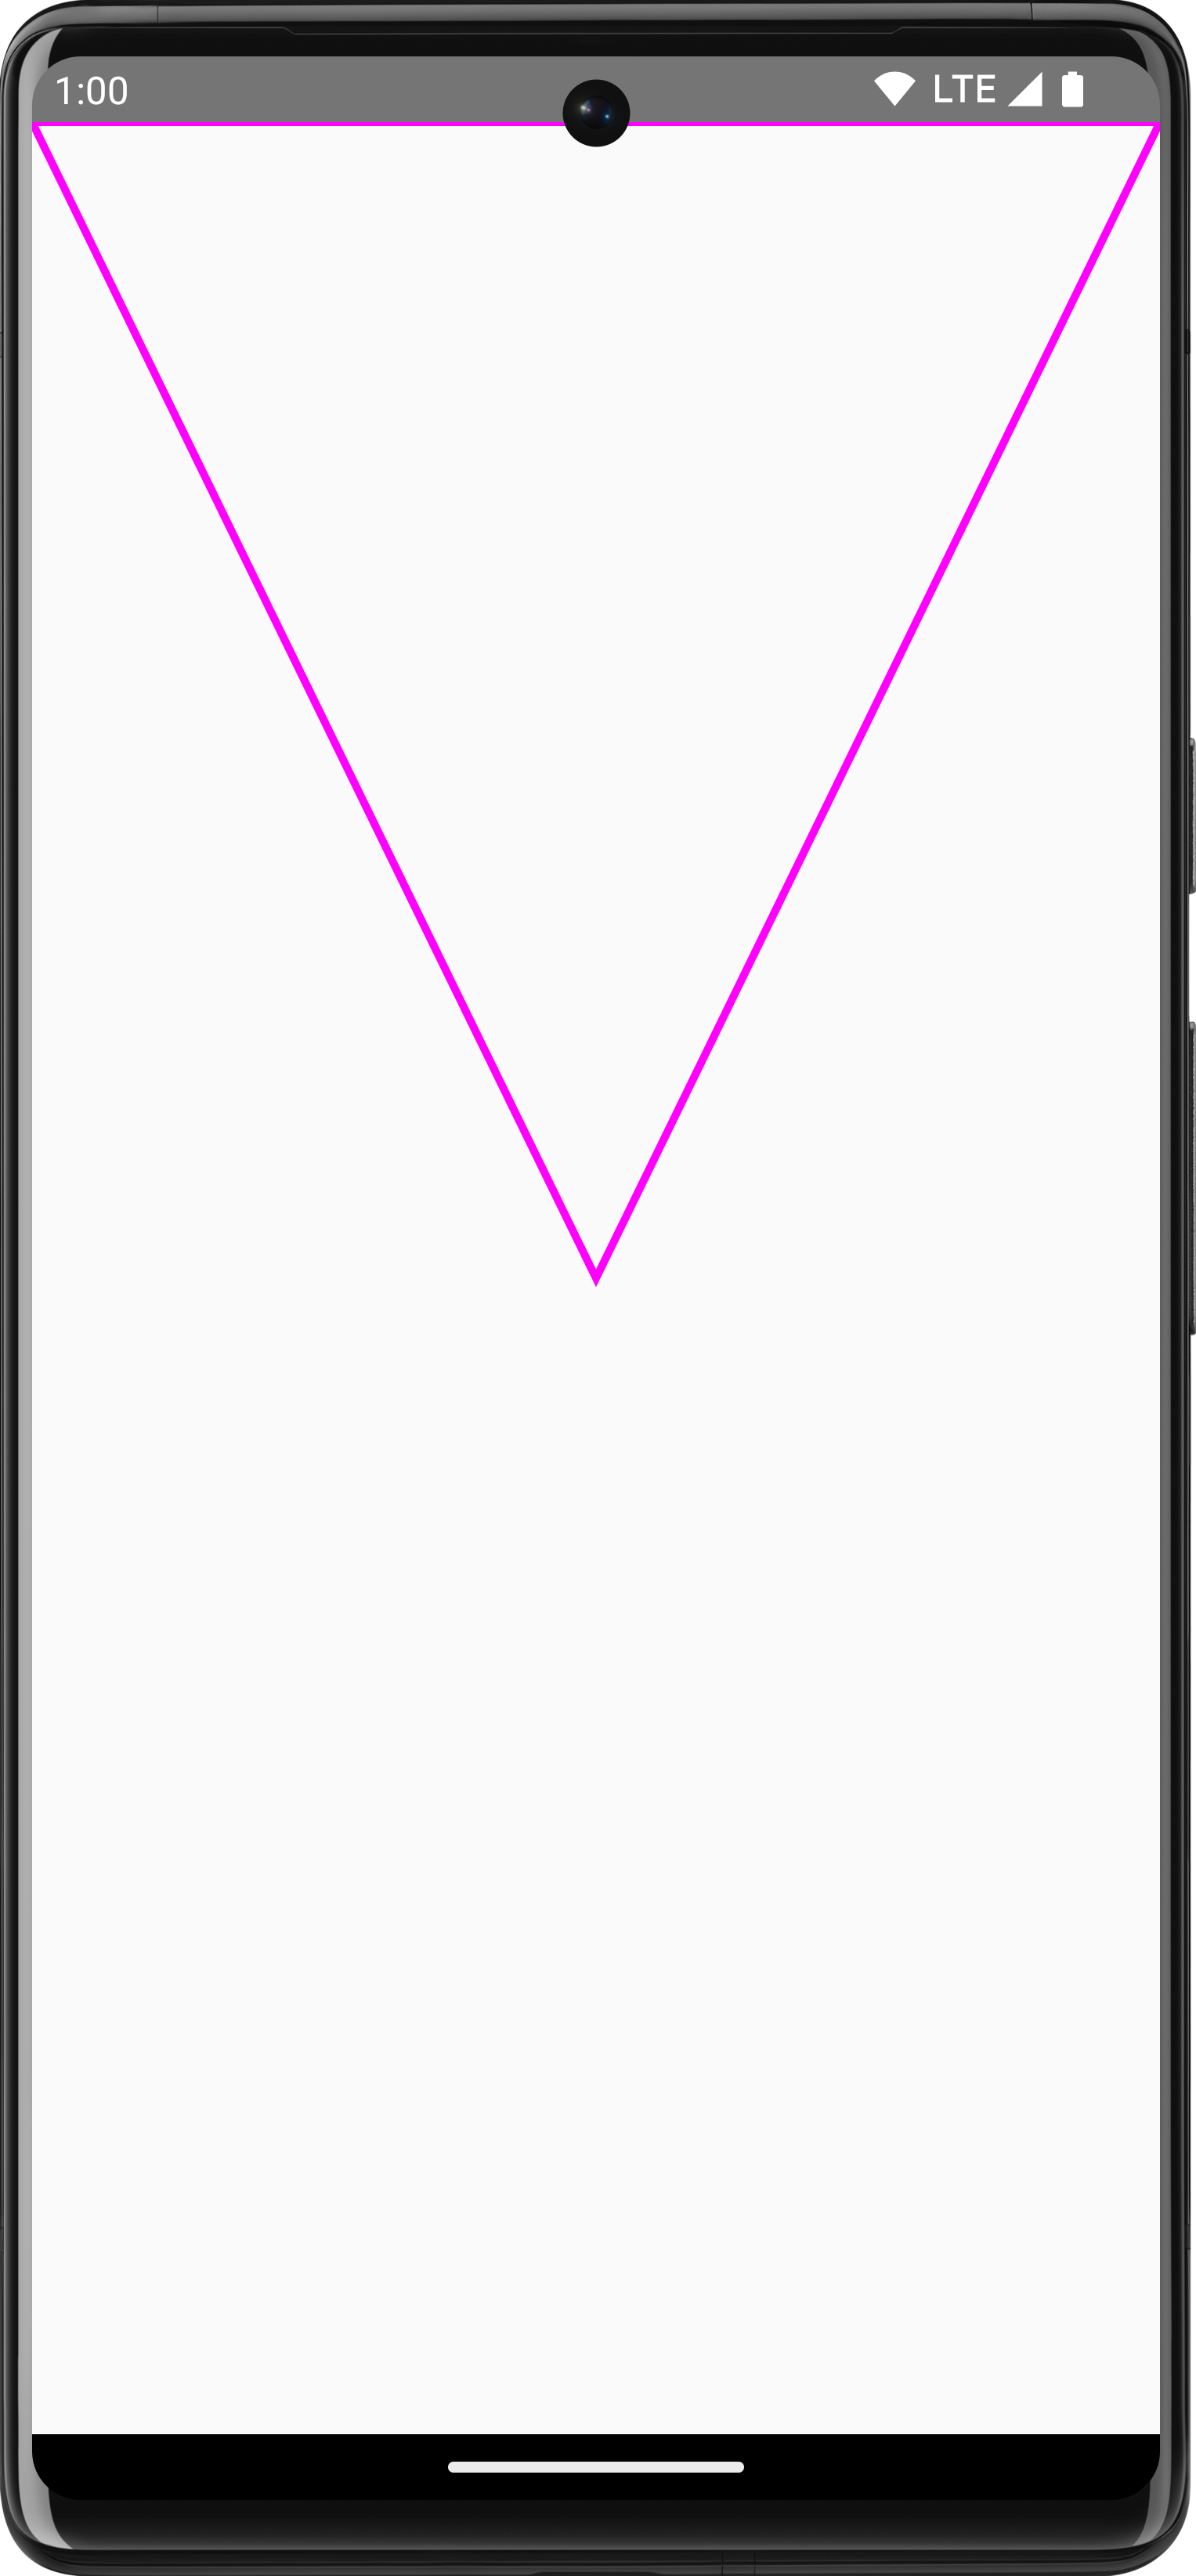 مثلث مسیر بنفش وارونه که روی Compose کشیده شده است